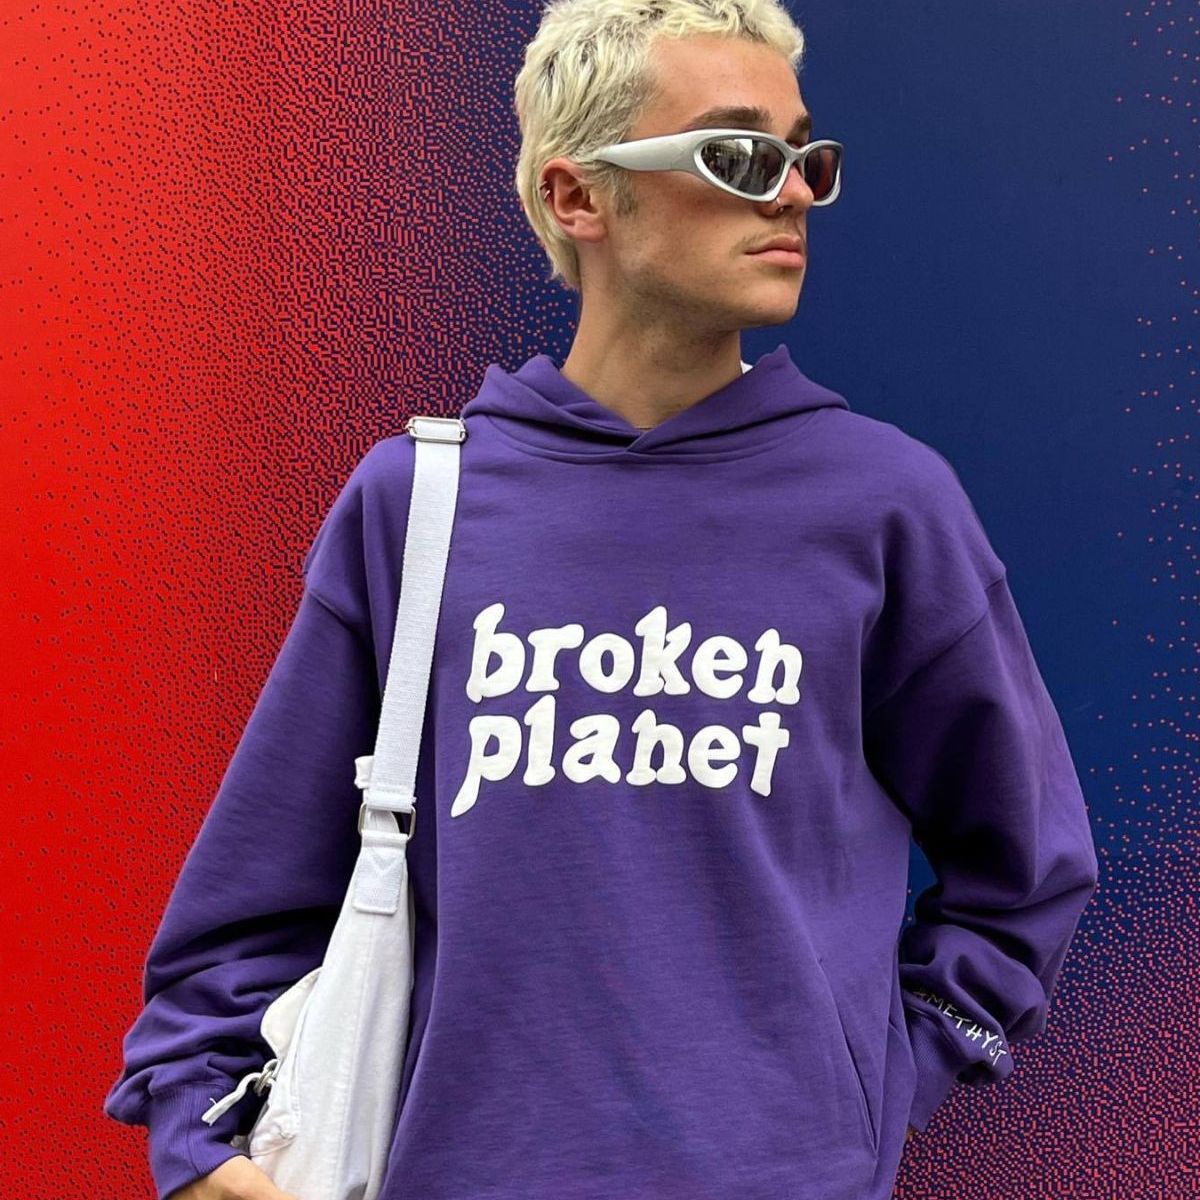 Broken Planet Sweat À Capuche Et Pantalon Survêtements - Violet